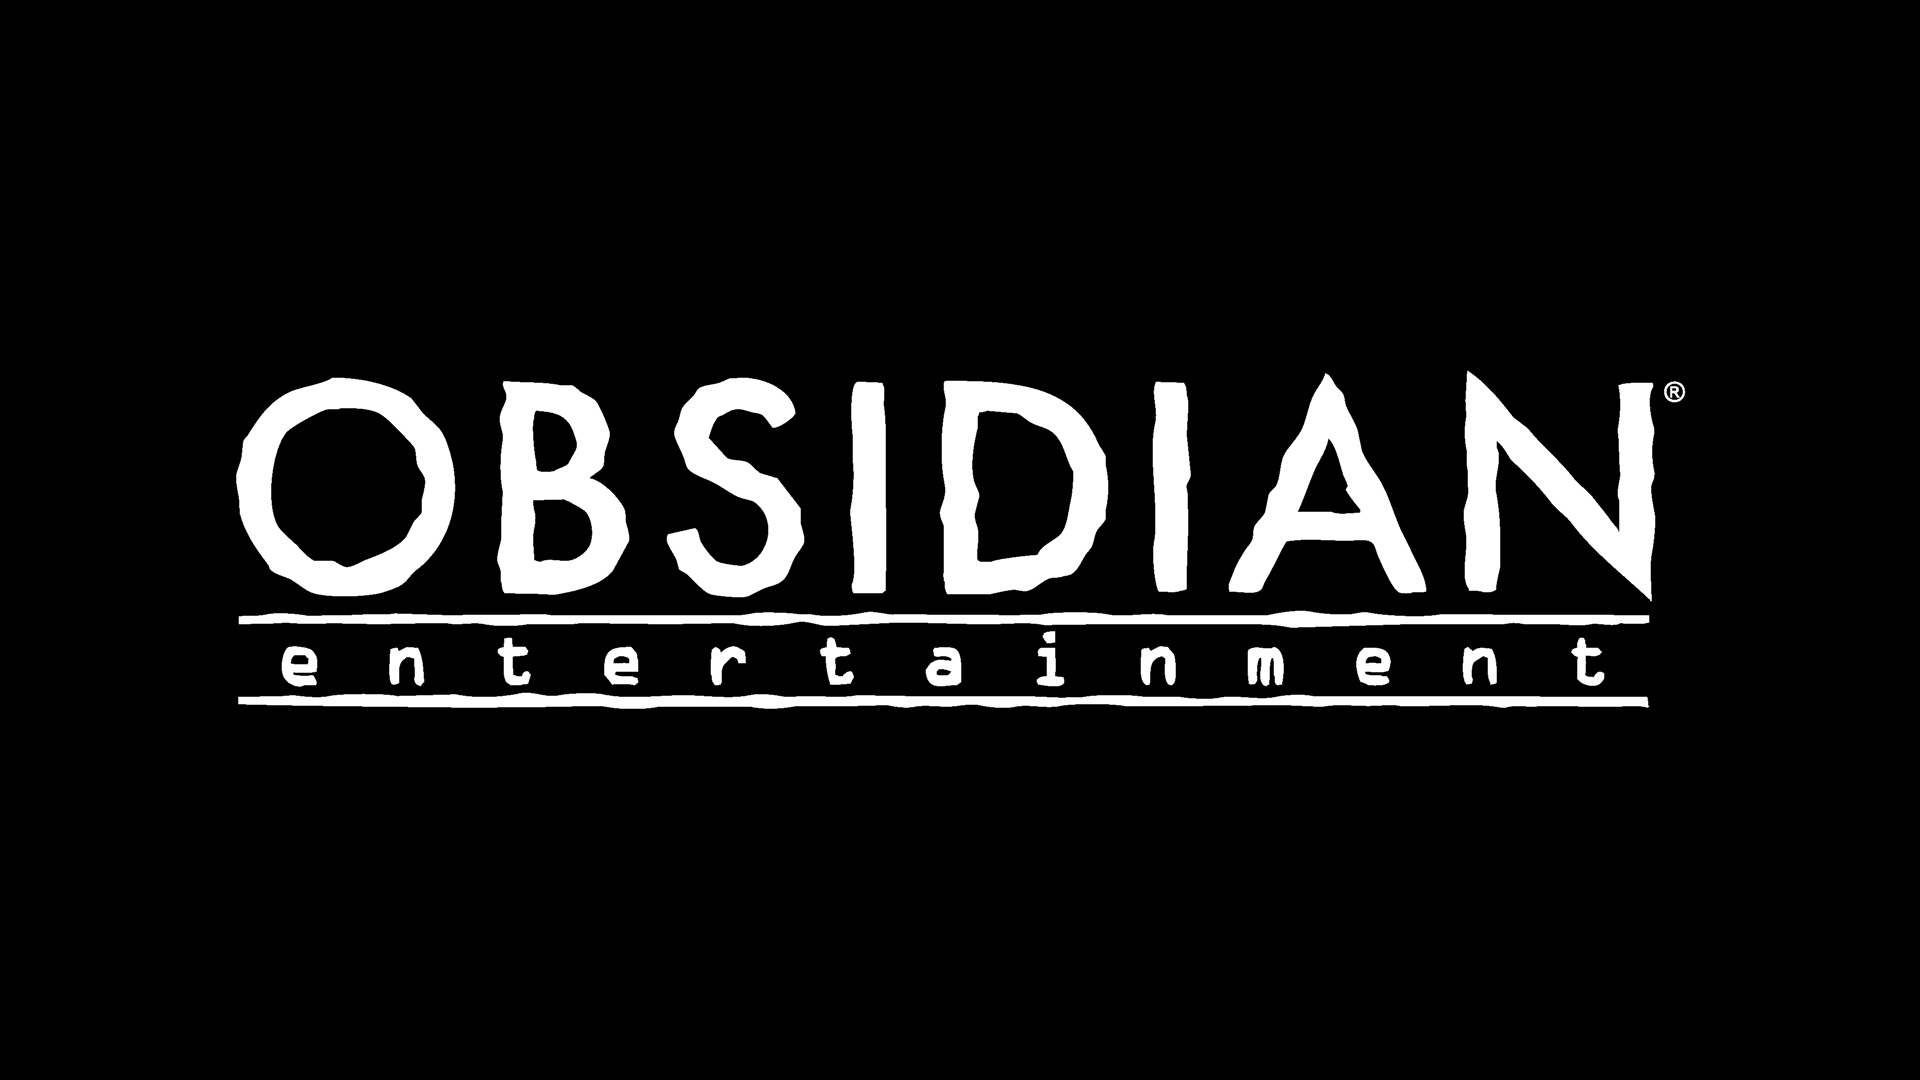 Obsidian Entertainment stellt Pläne zu The Outer Worlds, Grounded und den neuen Titel Avowed vor HERO